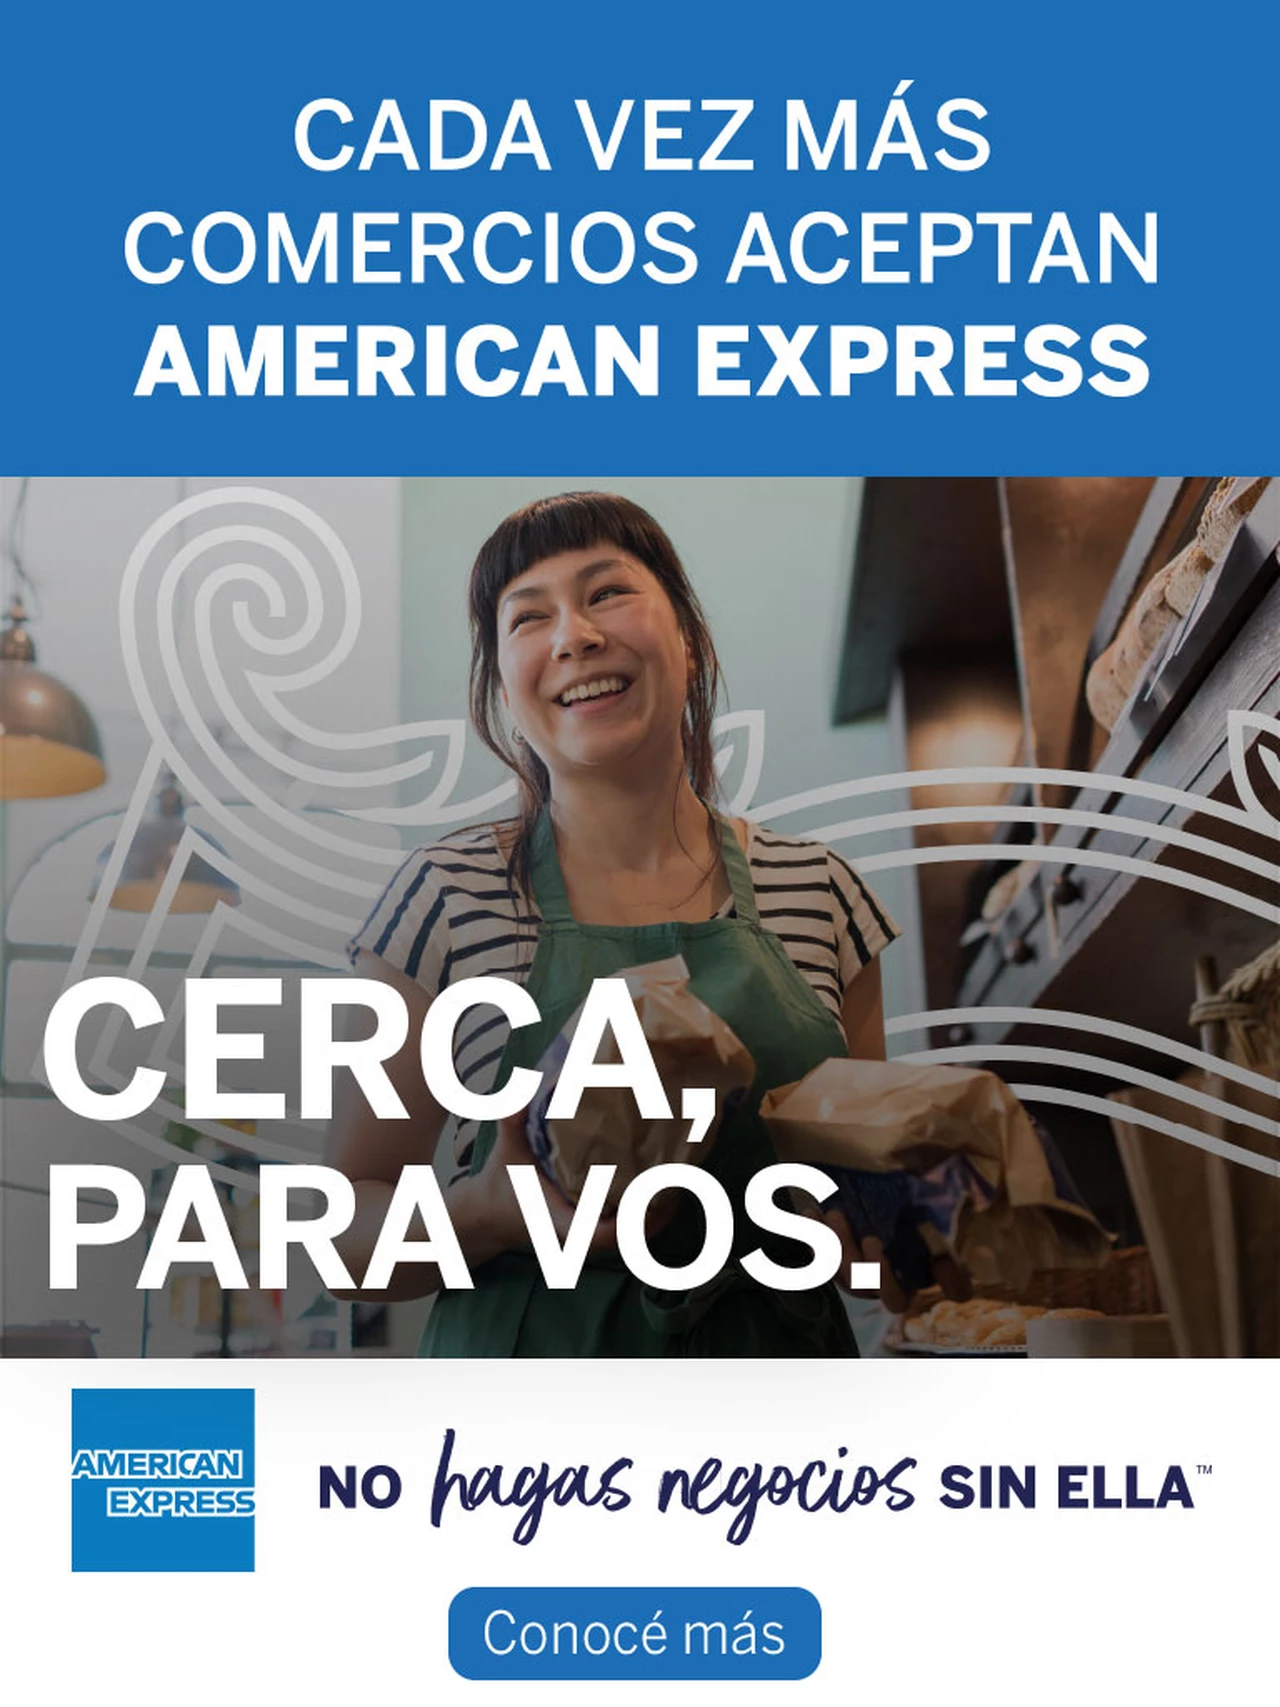 American Express llega a más comercios del interior del país con la campaña "Cerca, para vos"